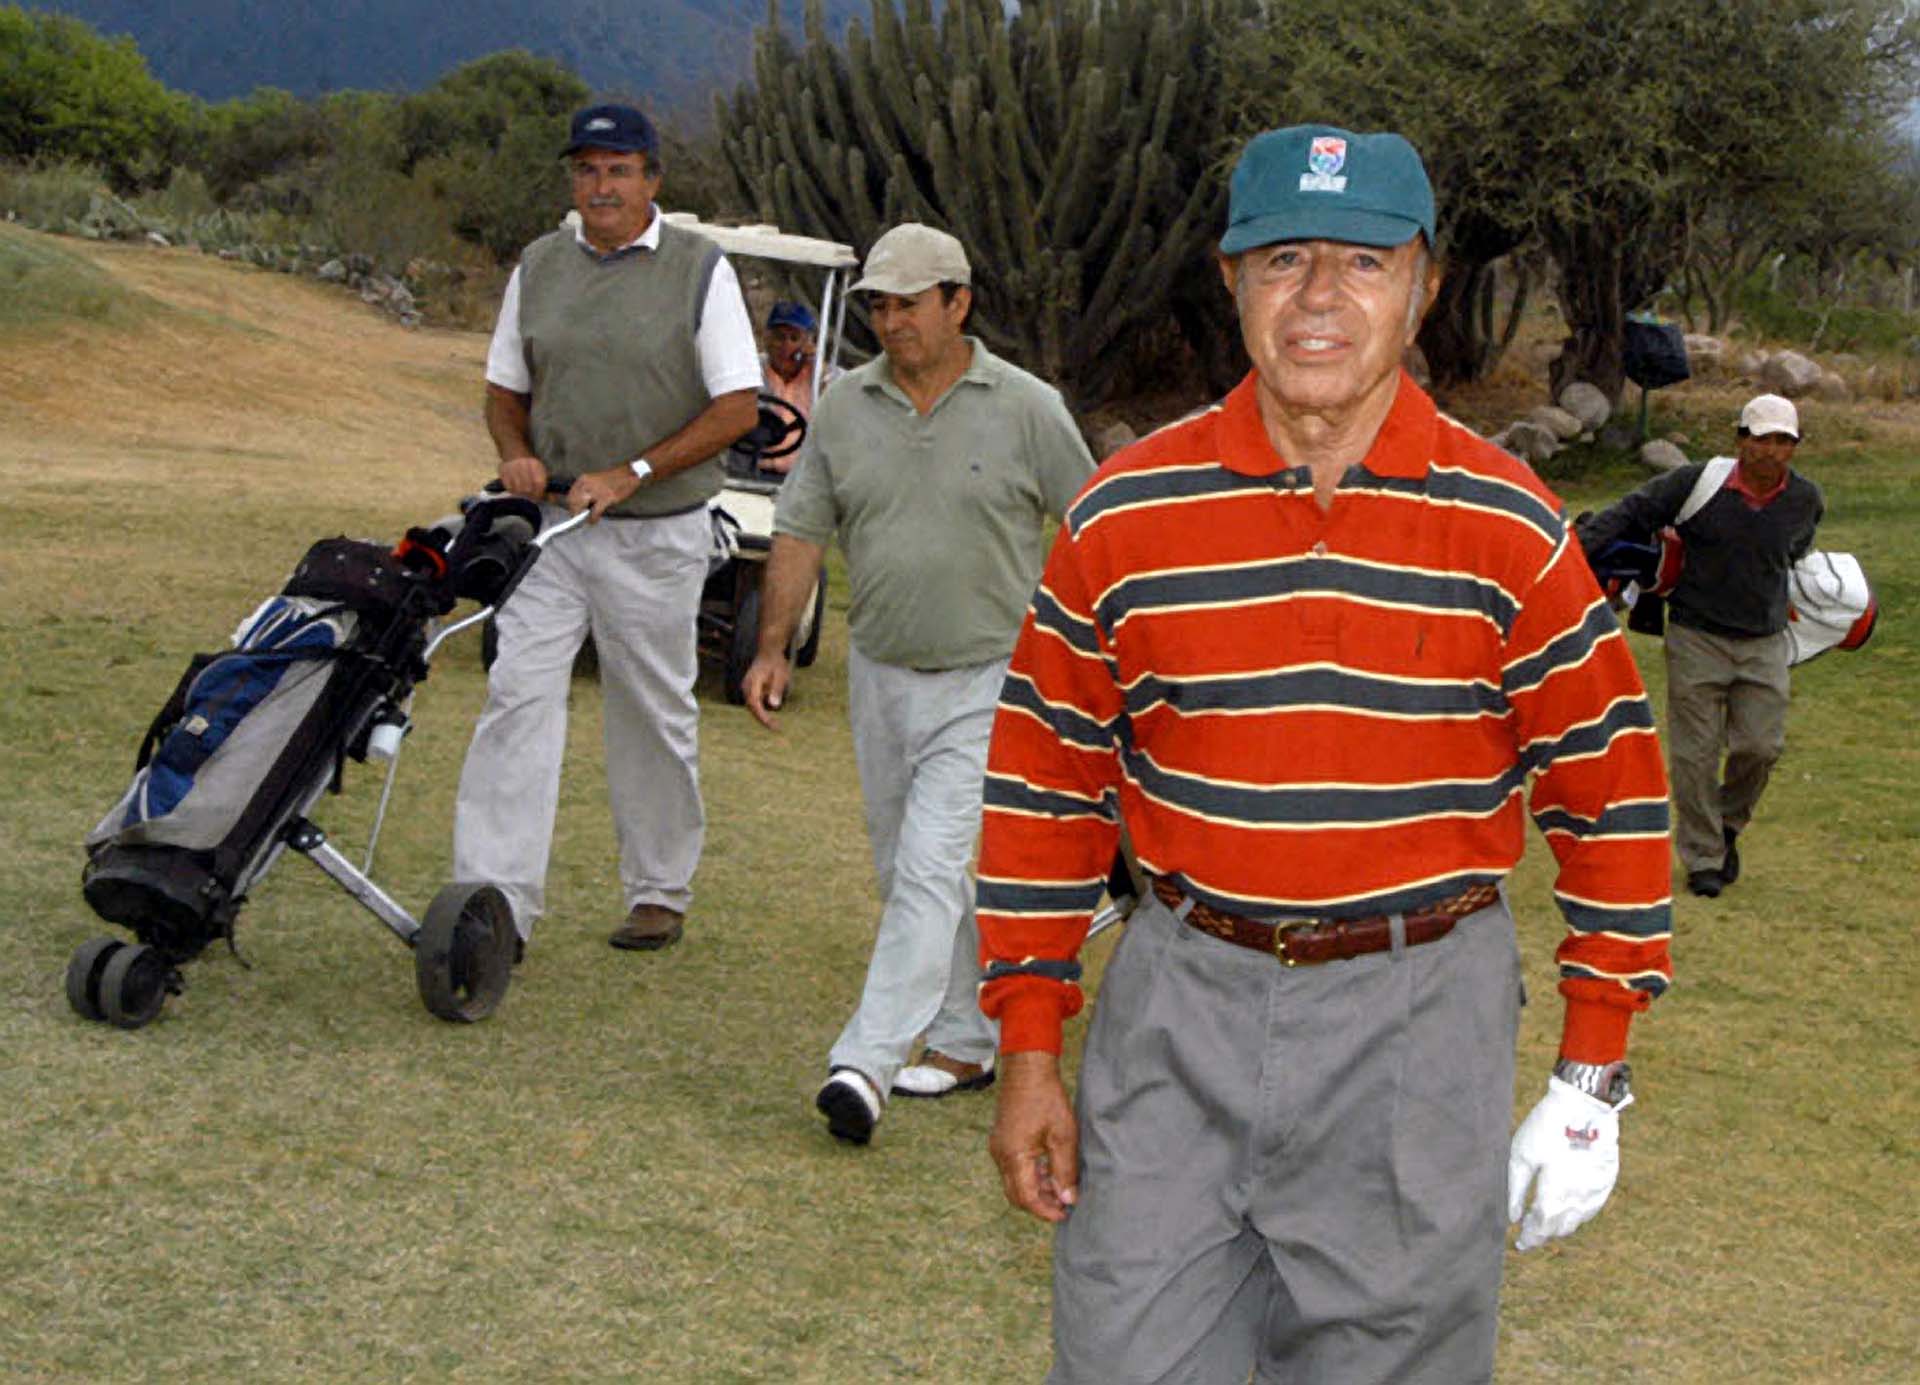 Una tarde de golf en La Rioja, tras haber emitido su voto en elecciones legislativas. El ex presidente se ha mostrado a lo largo de su vida practicando distintos deportes